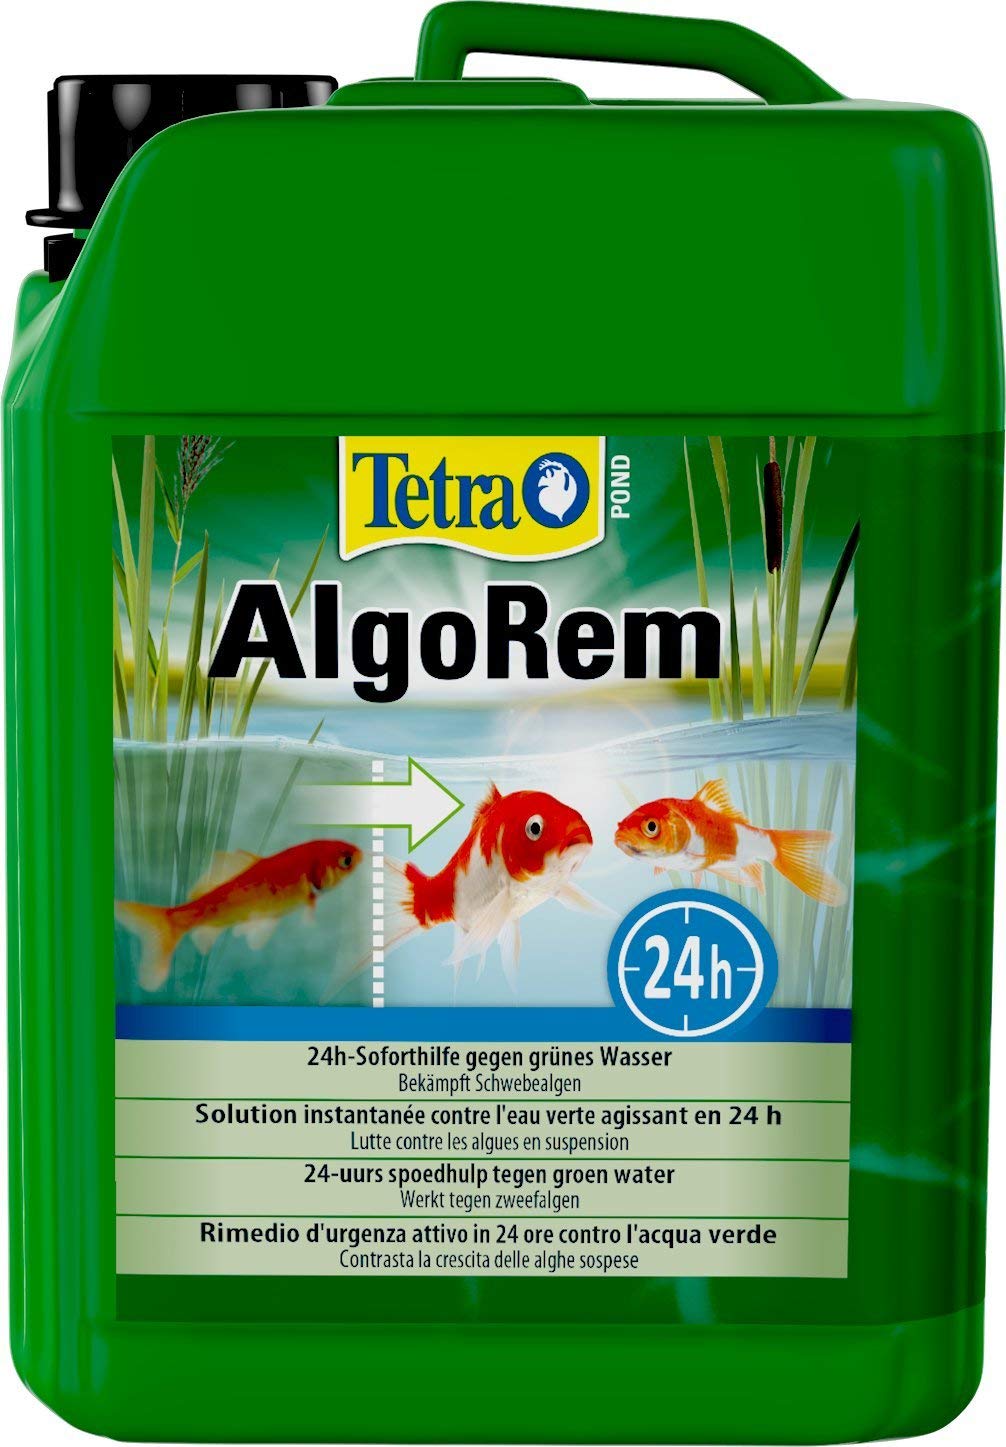 Tetra Pond AlgoRem - 24-Stunden-Soforthilfe gegen grünes Wasser im Gartenteich, bekämpft Schwebealgen, 3 L Eimer